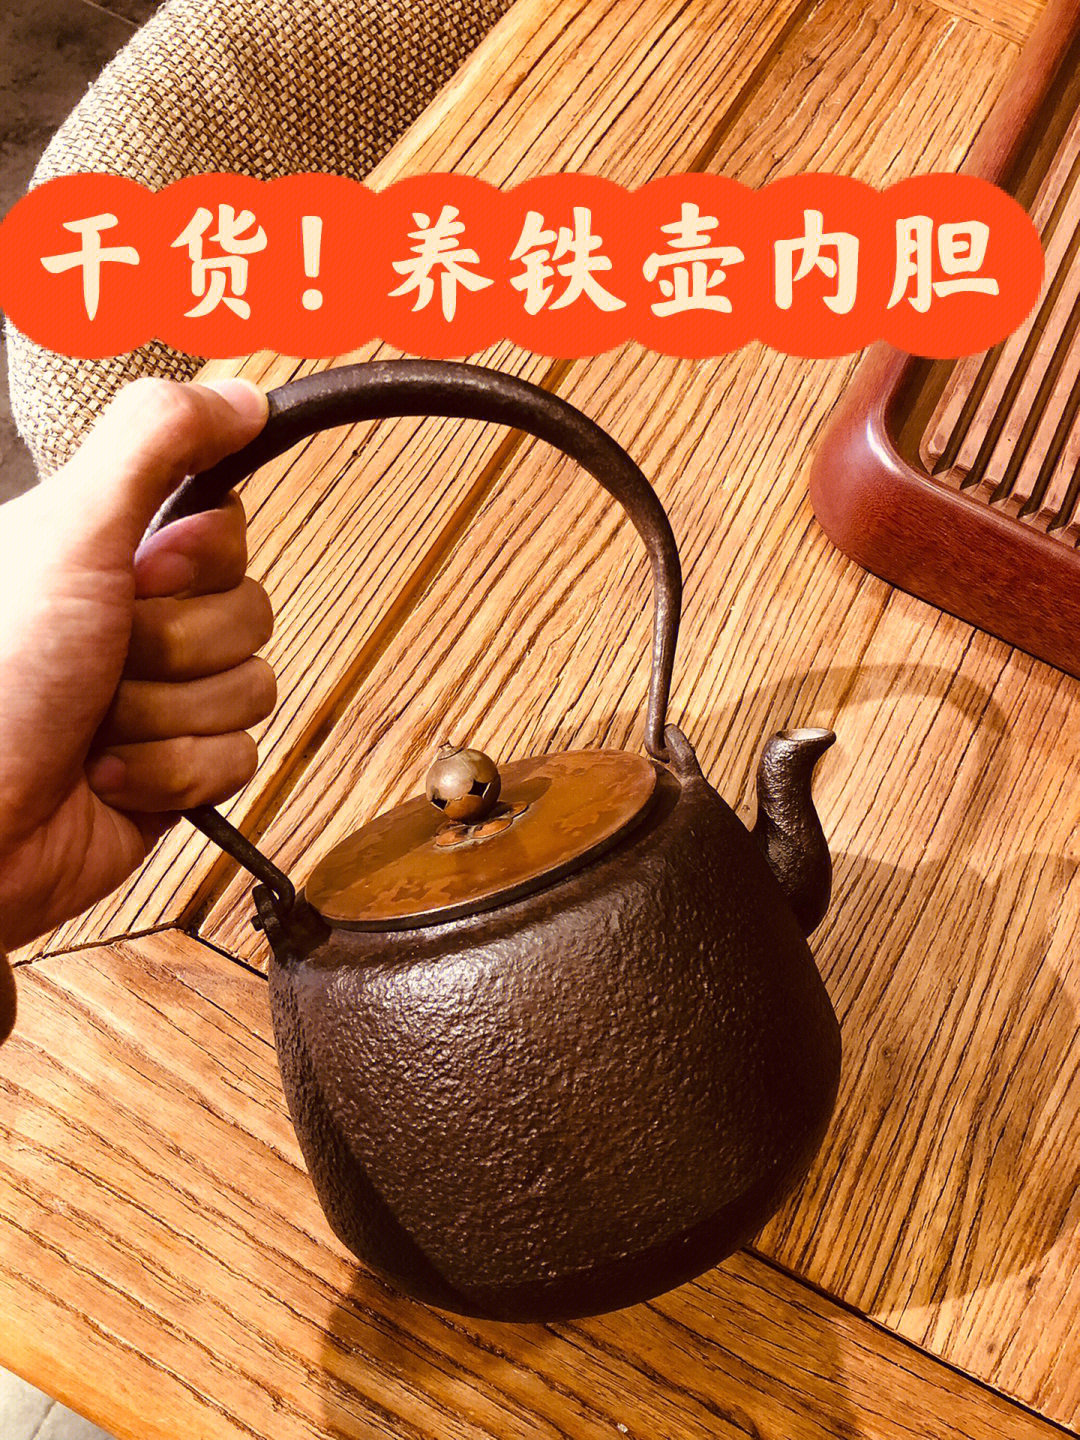 到了秋冬,看各位网友的秋冬饮茶美文,很多都会出现一把日本老铁壶